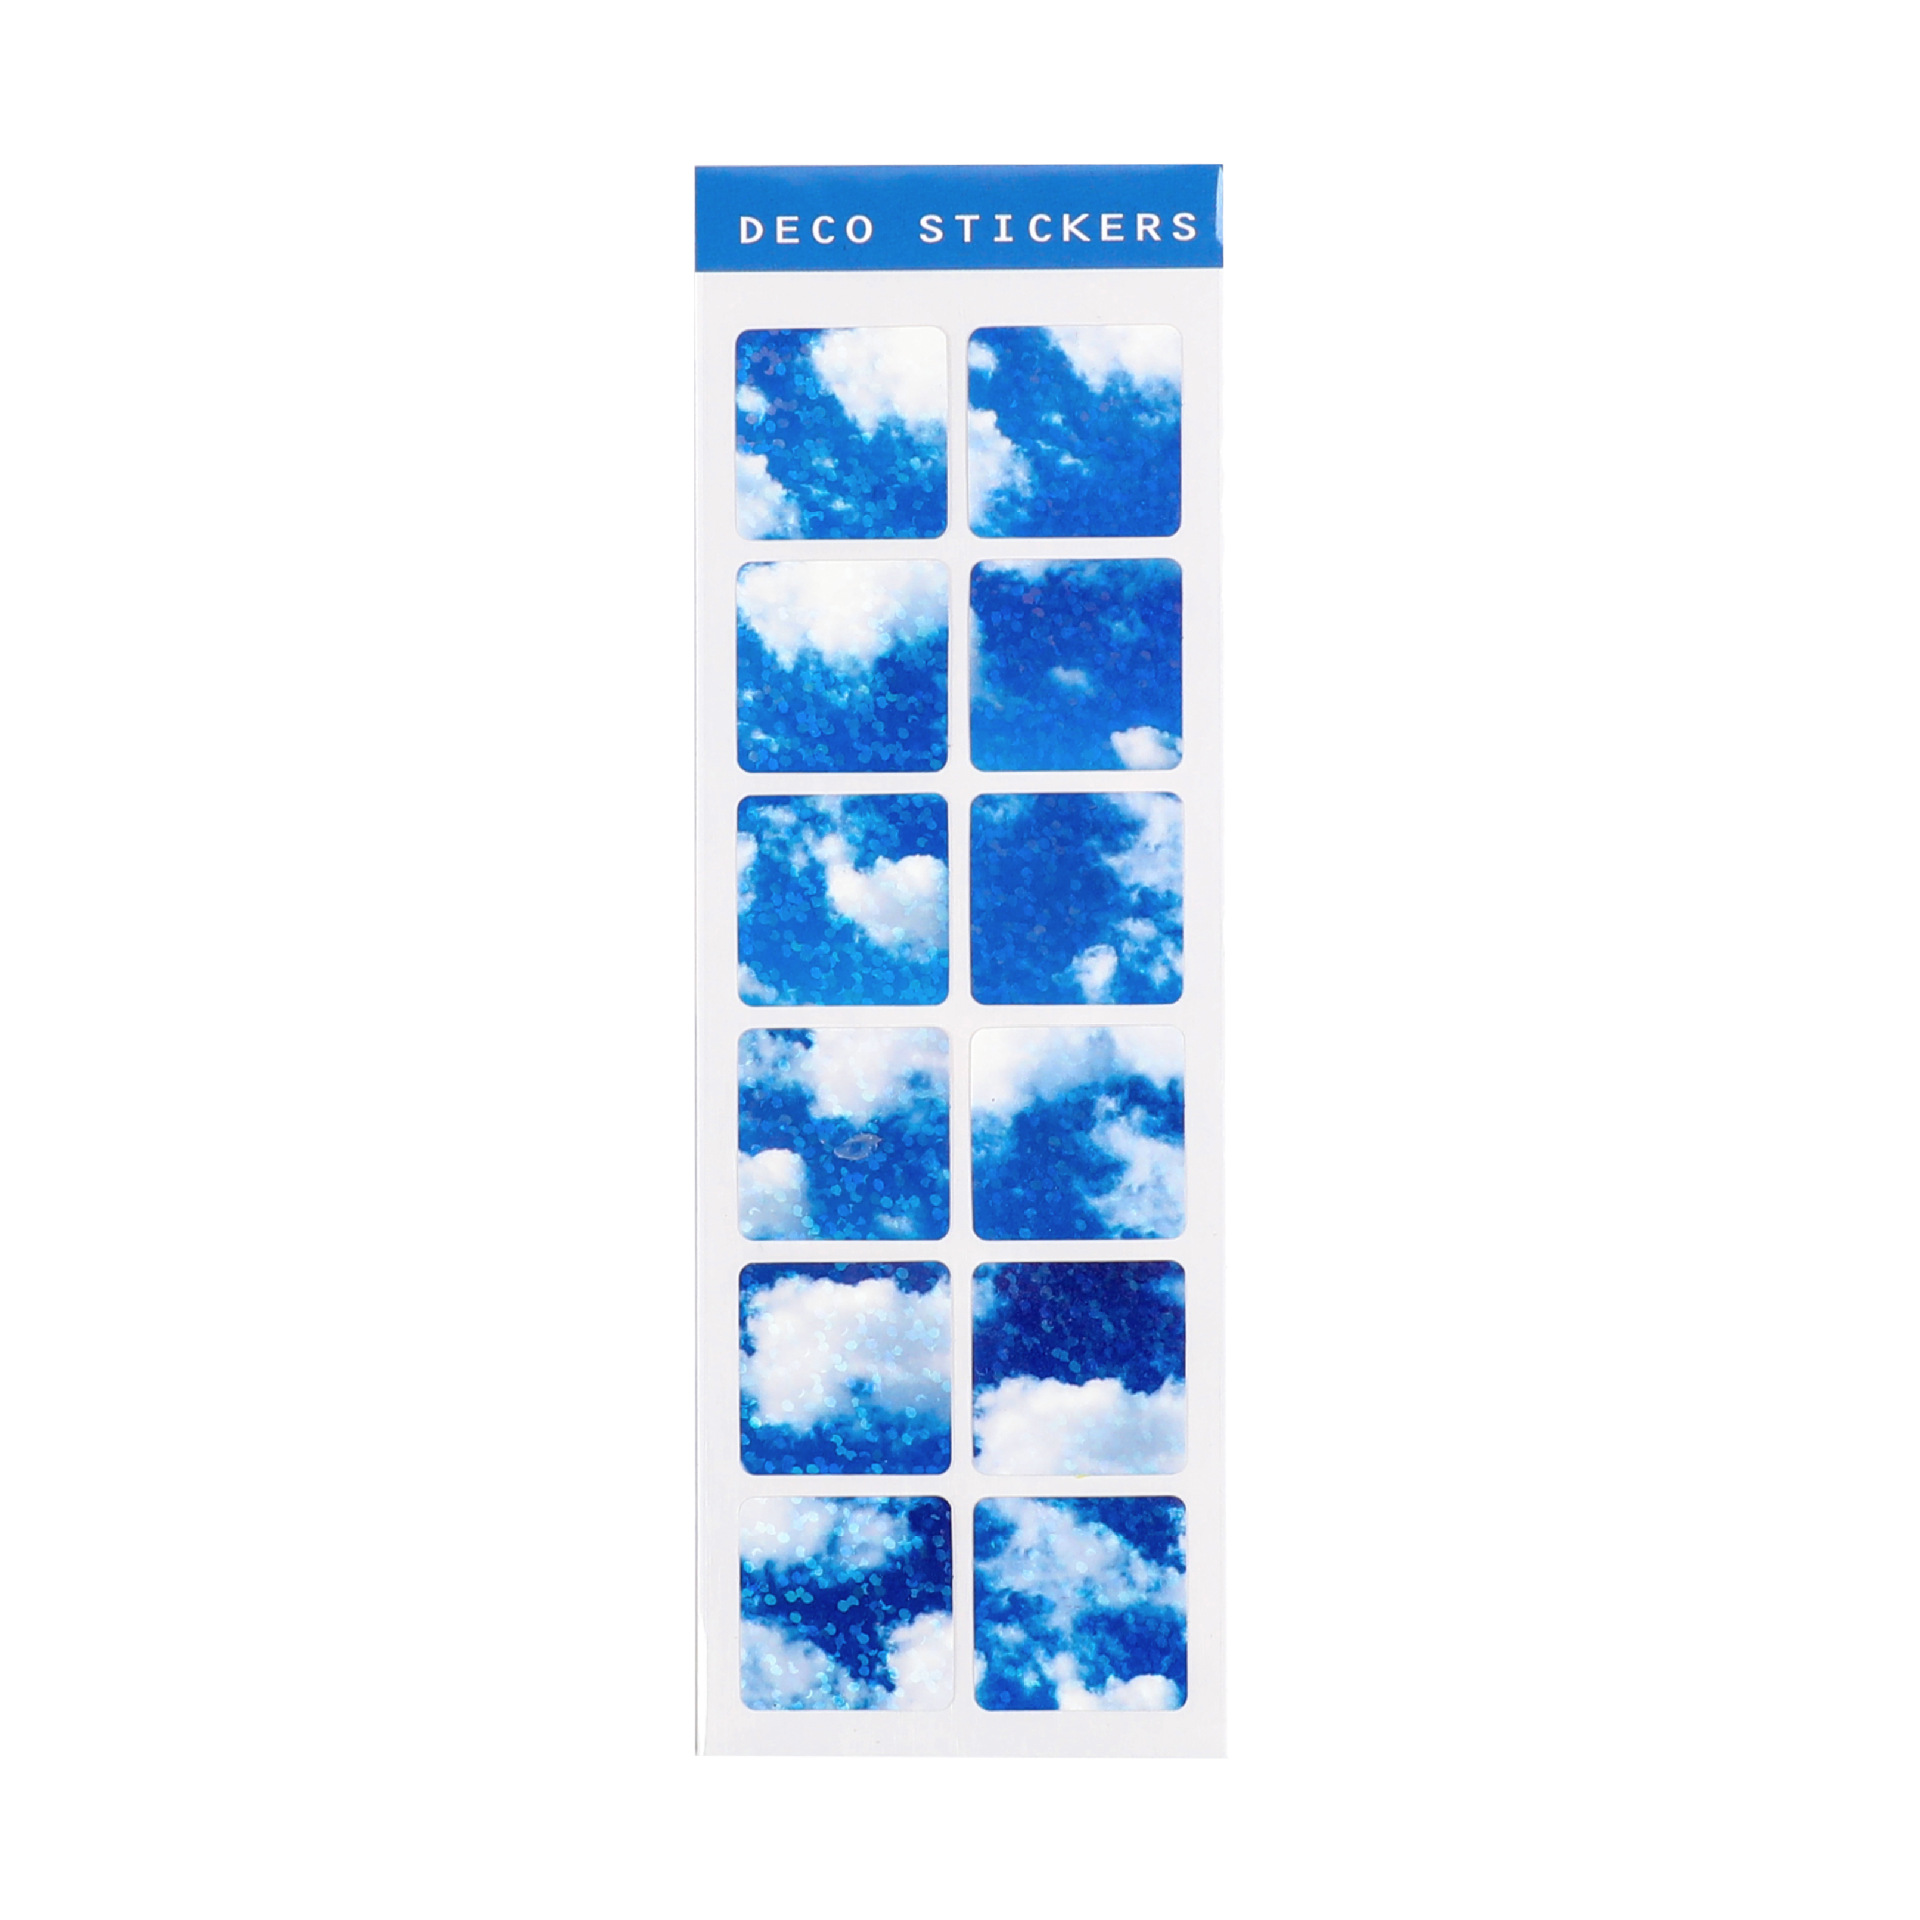 S42 - Tờ 12 sticker vuông PVC chống nước ánh nhũ bầu trời hoa anh đào trang trí đồ dùng học tập, sổ bullet journal